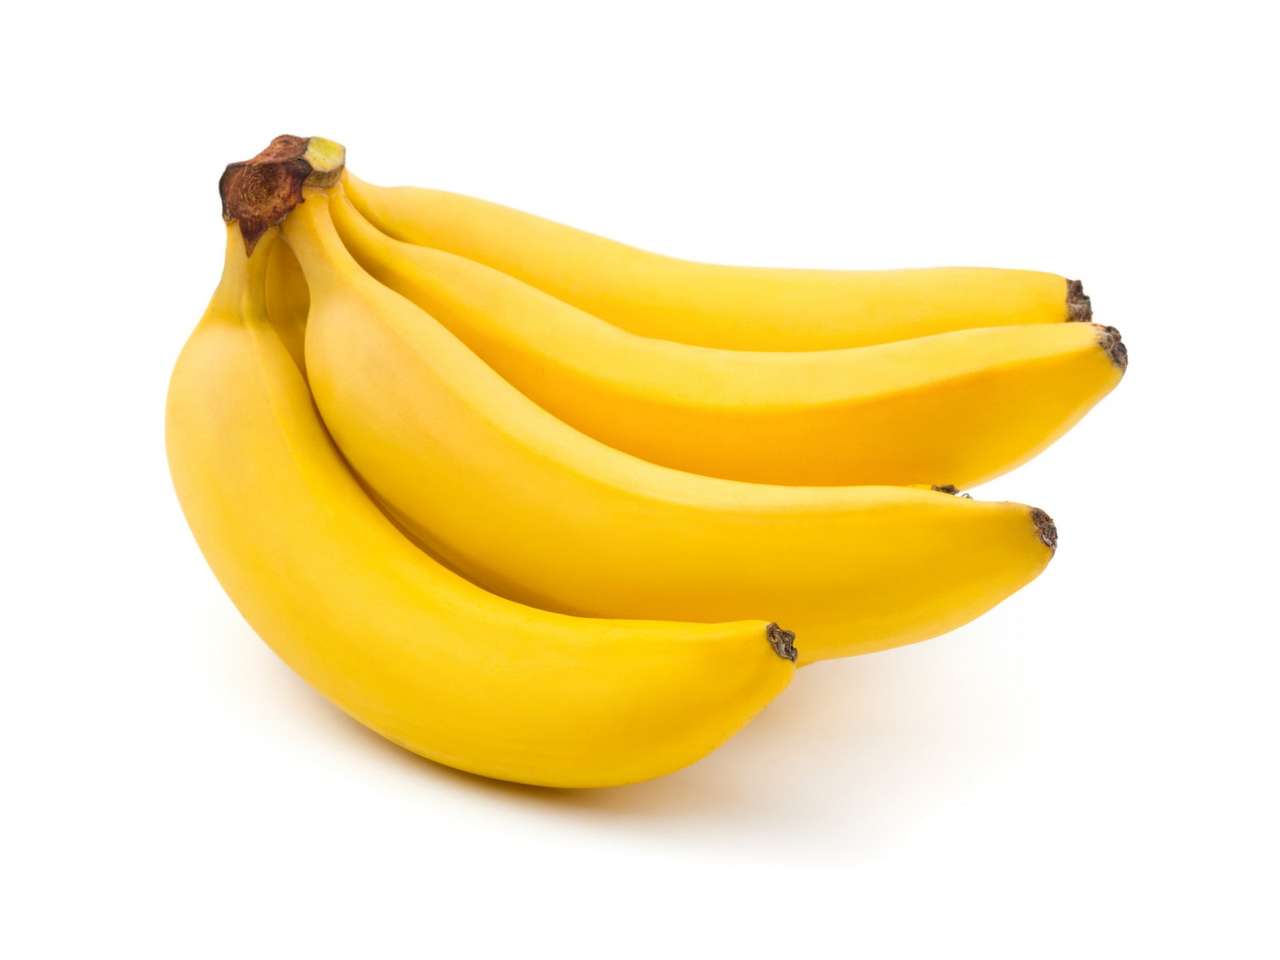 хм кеш банан онлайн пъзел